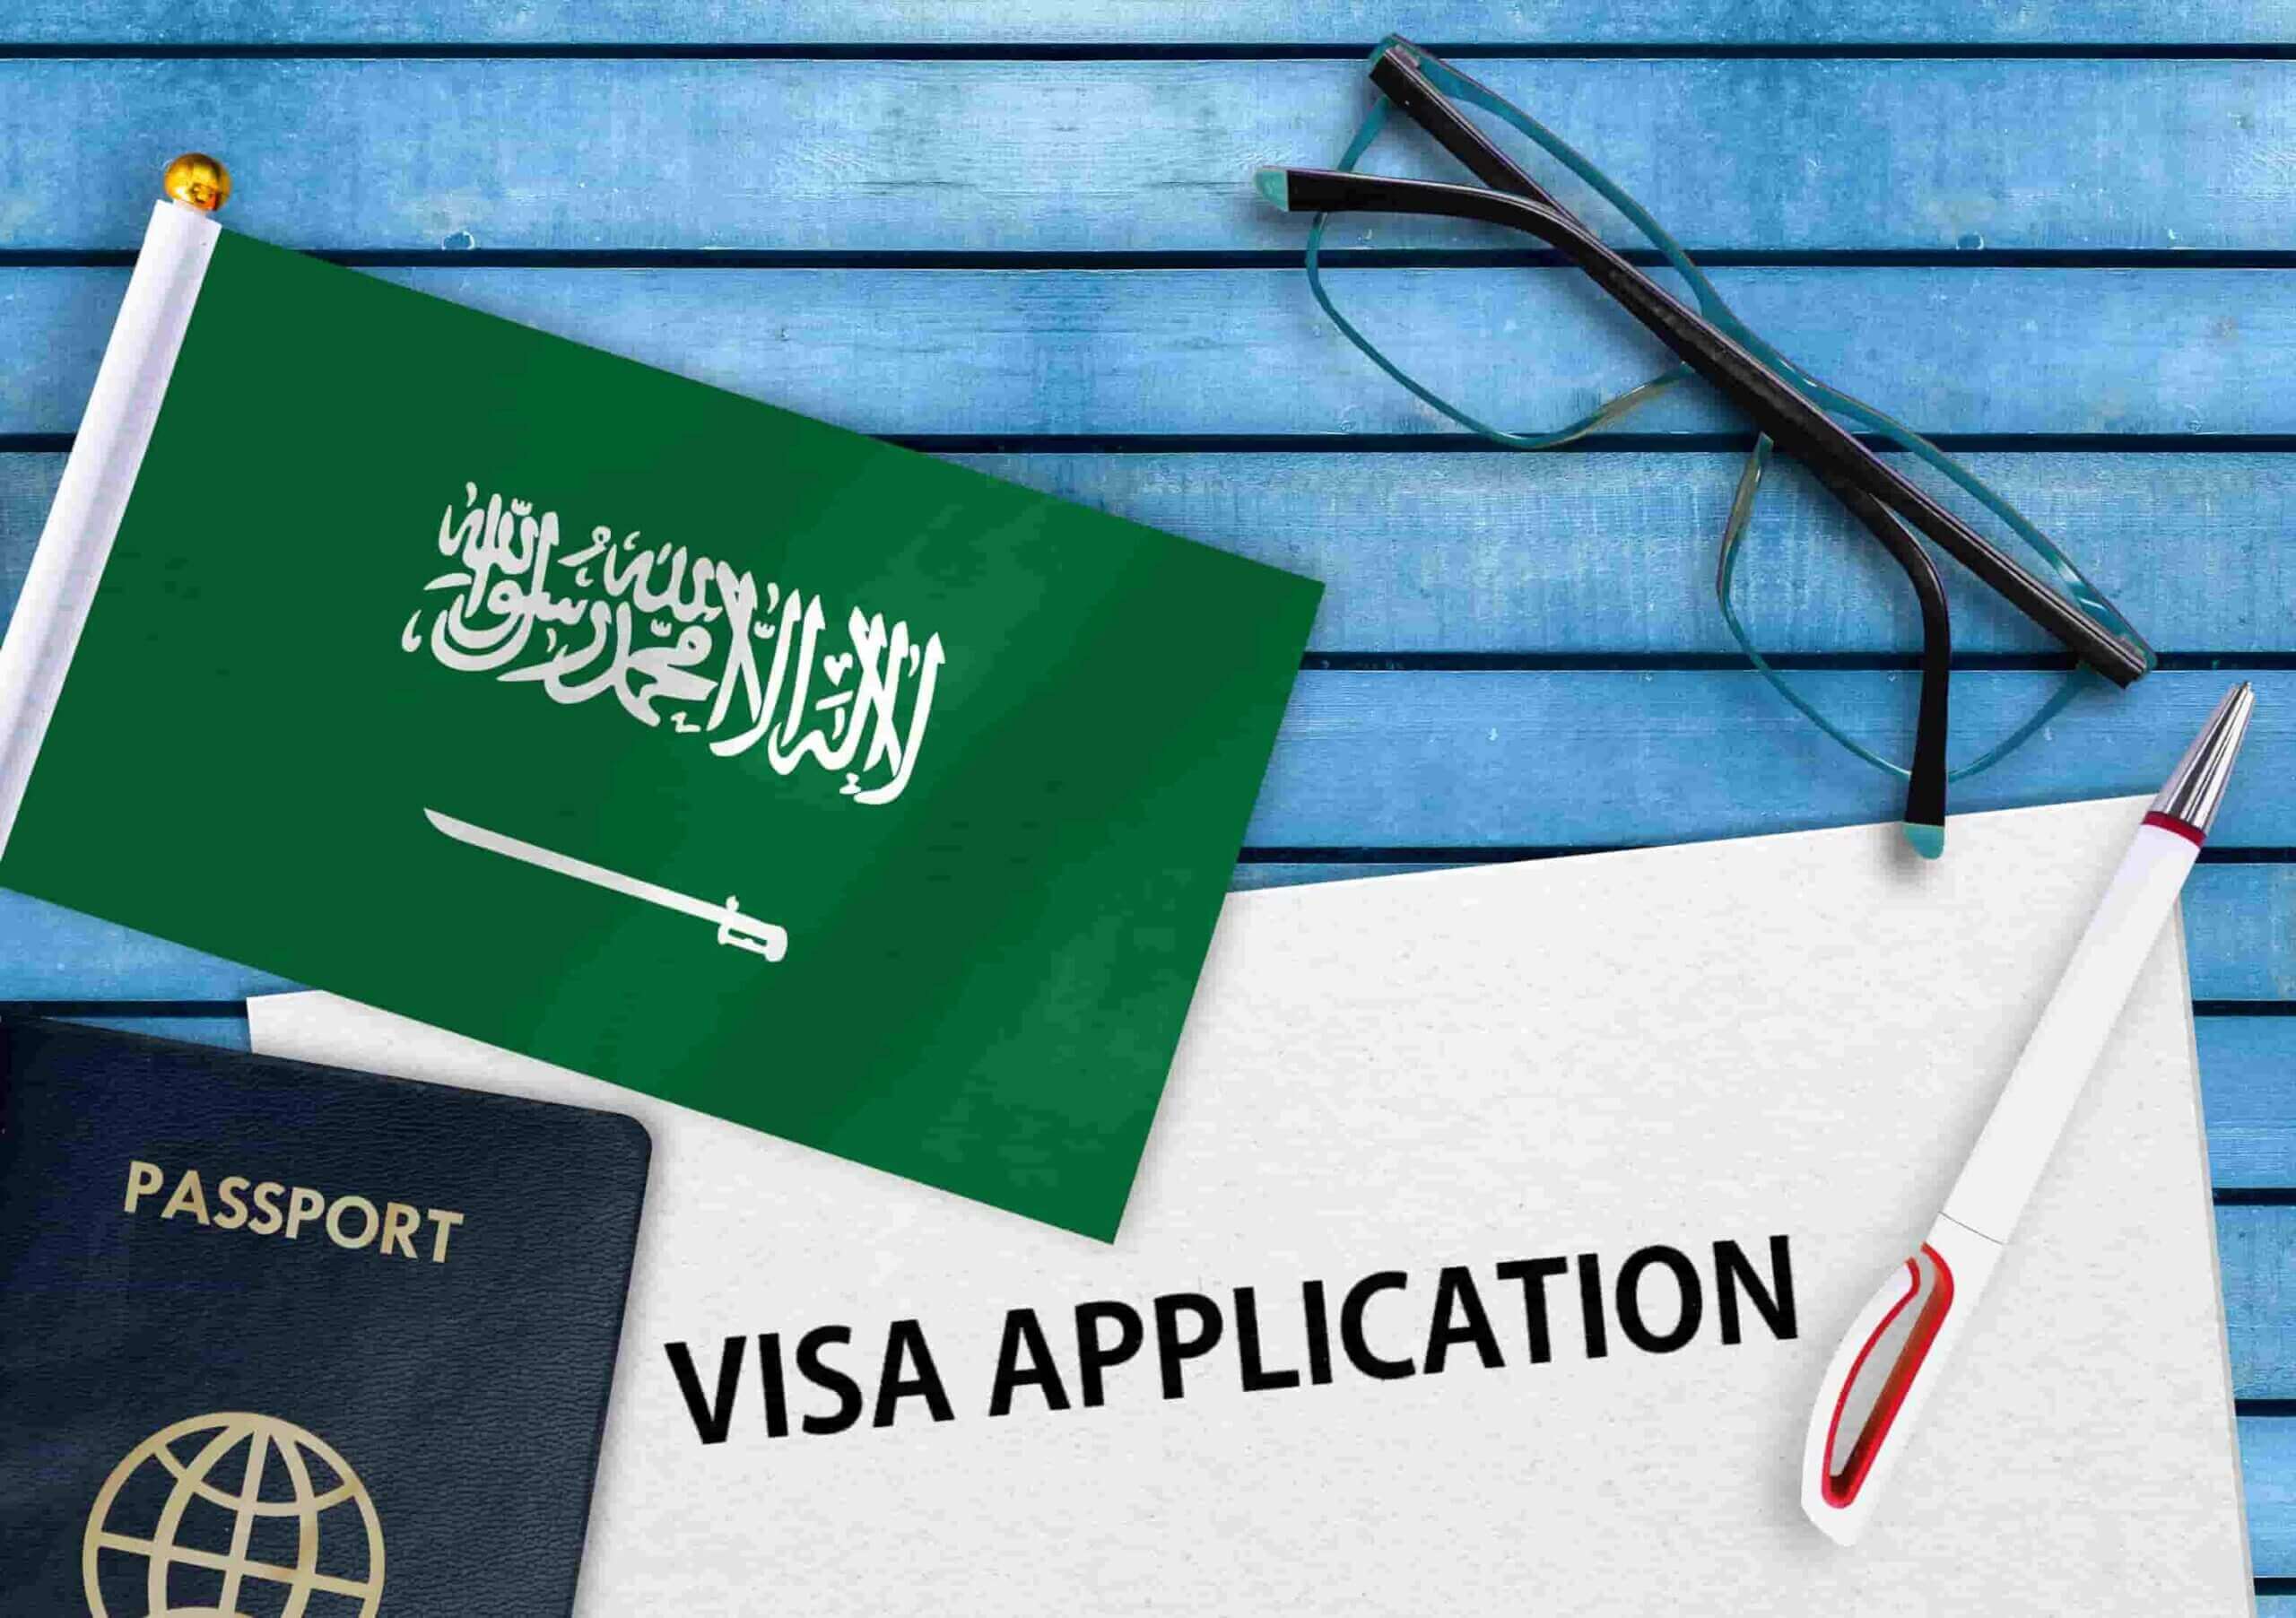 business visit visa extension saudi arabia